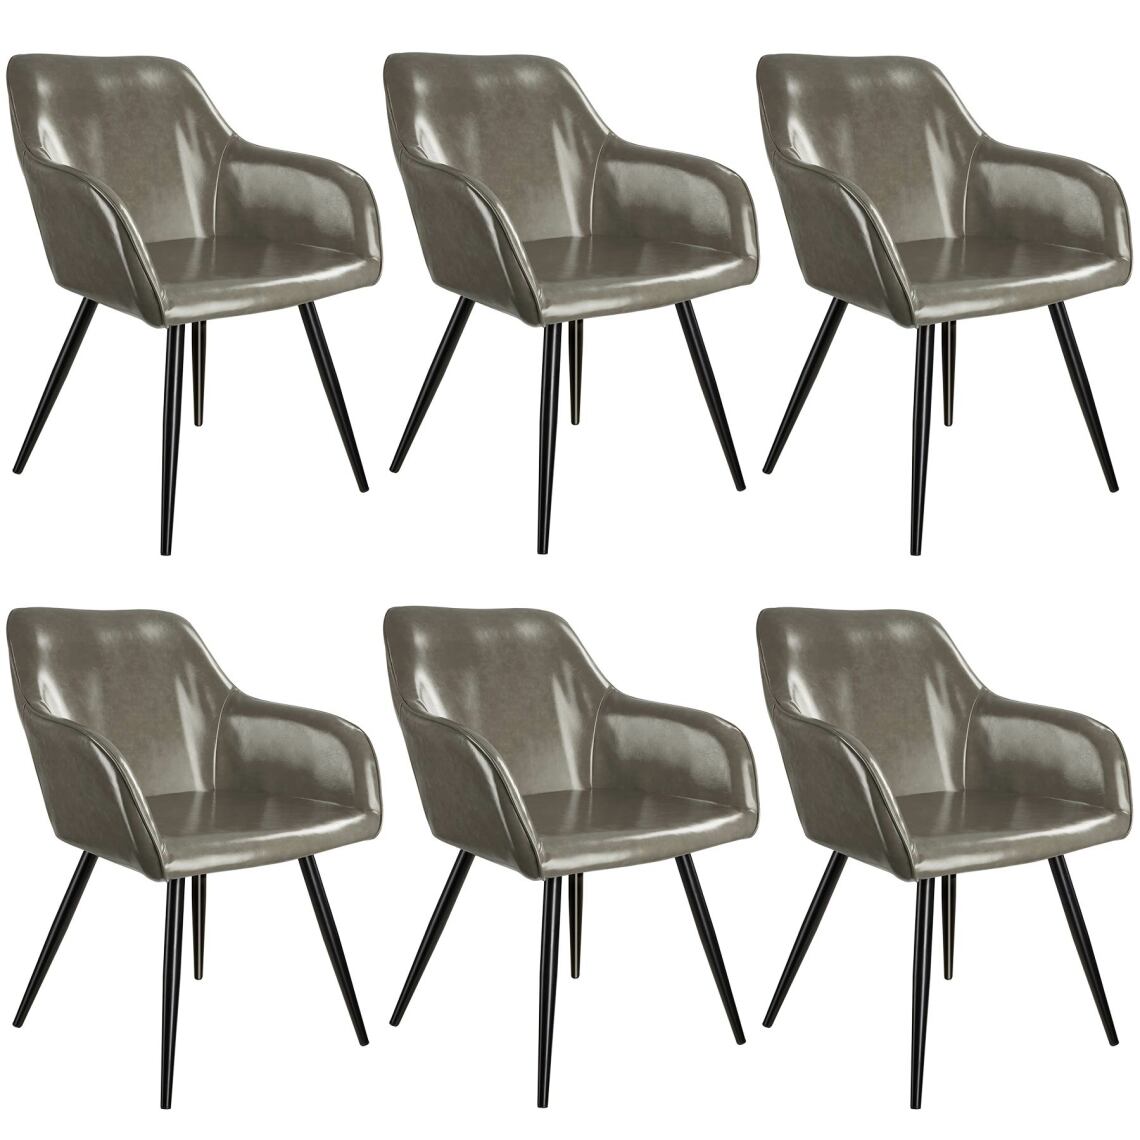 Tectake - 6 Chaises Marilyn en cuir synthétique - gris foncé-noir - Chaises